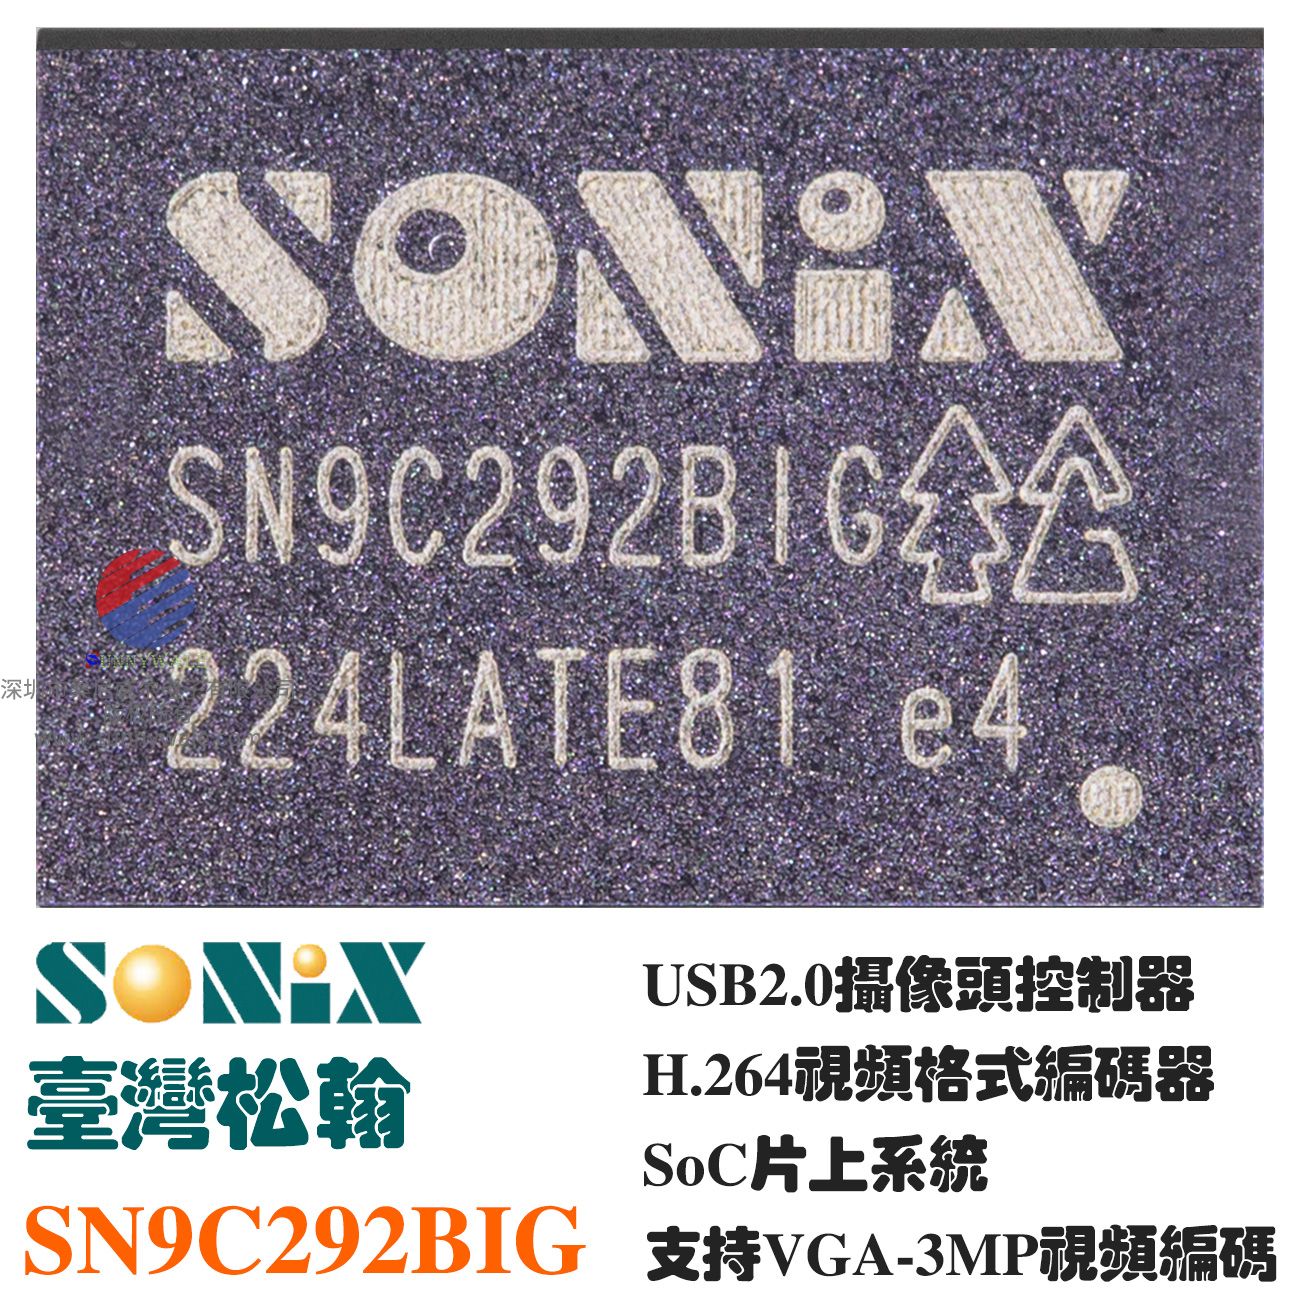 松翰SONIX SN9C292B方案商 ，经销商 , H.264视频编码器，USB2.0摄像头视频控制器，SoC片上系统，支持VGA to 3MP视频编码引擎